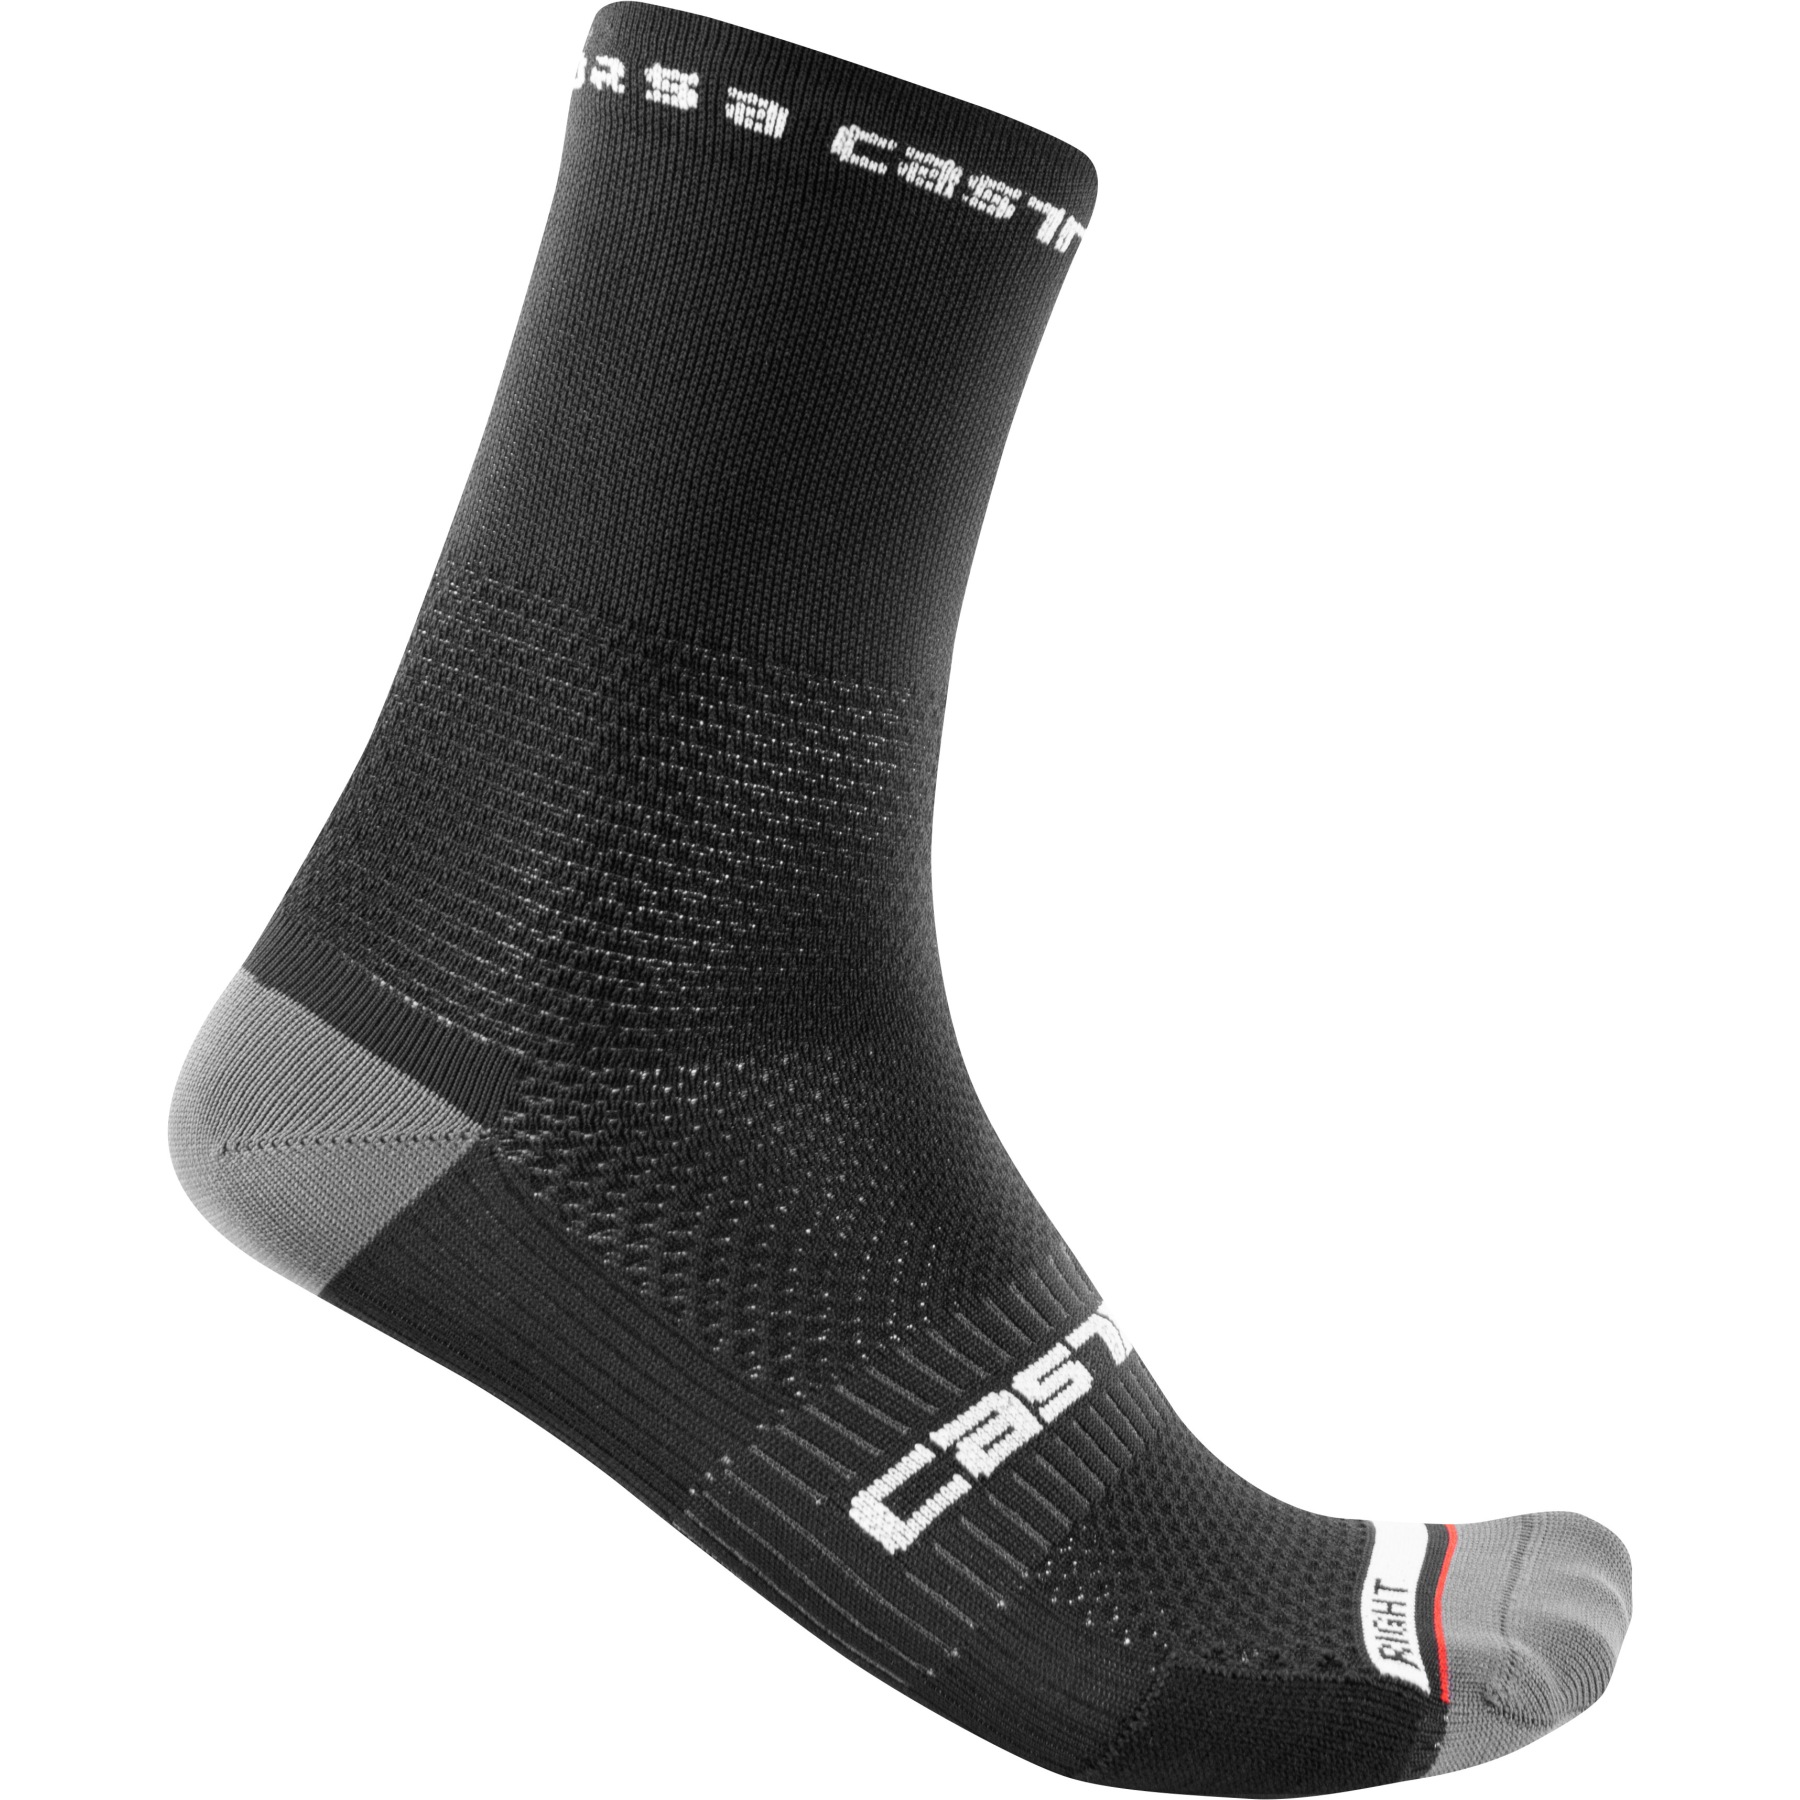 Produktbild von Castelli Rosso Corsa Pro 15 Socken - schwarz 010